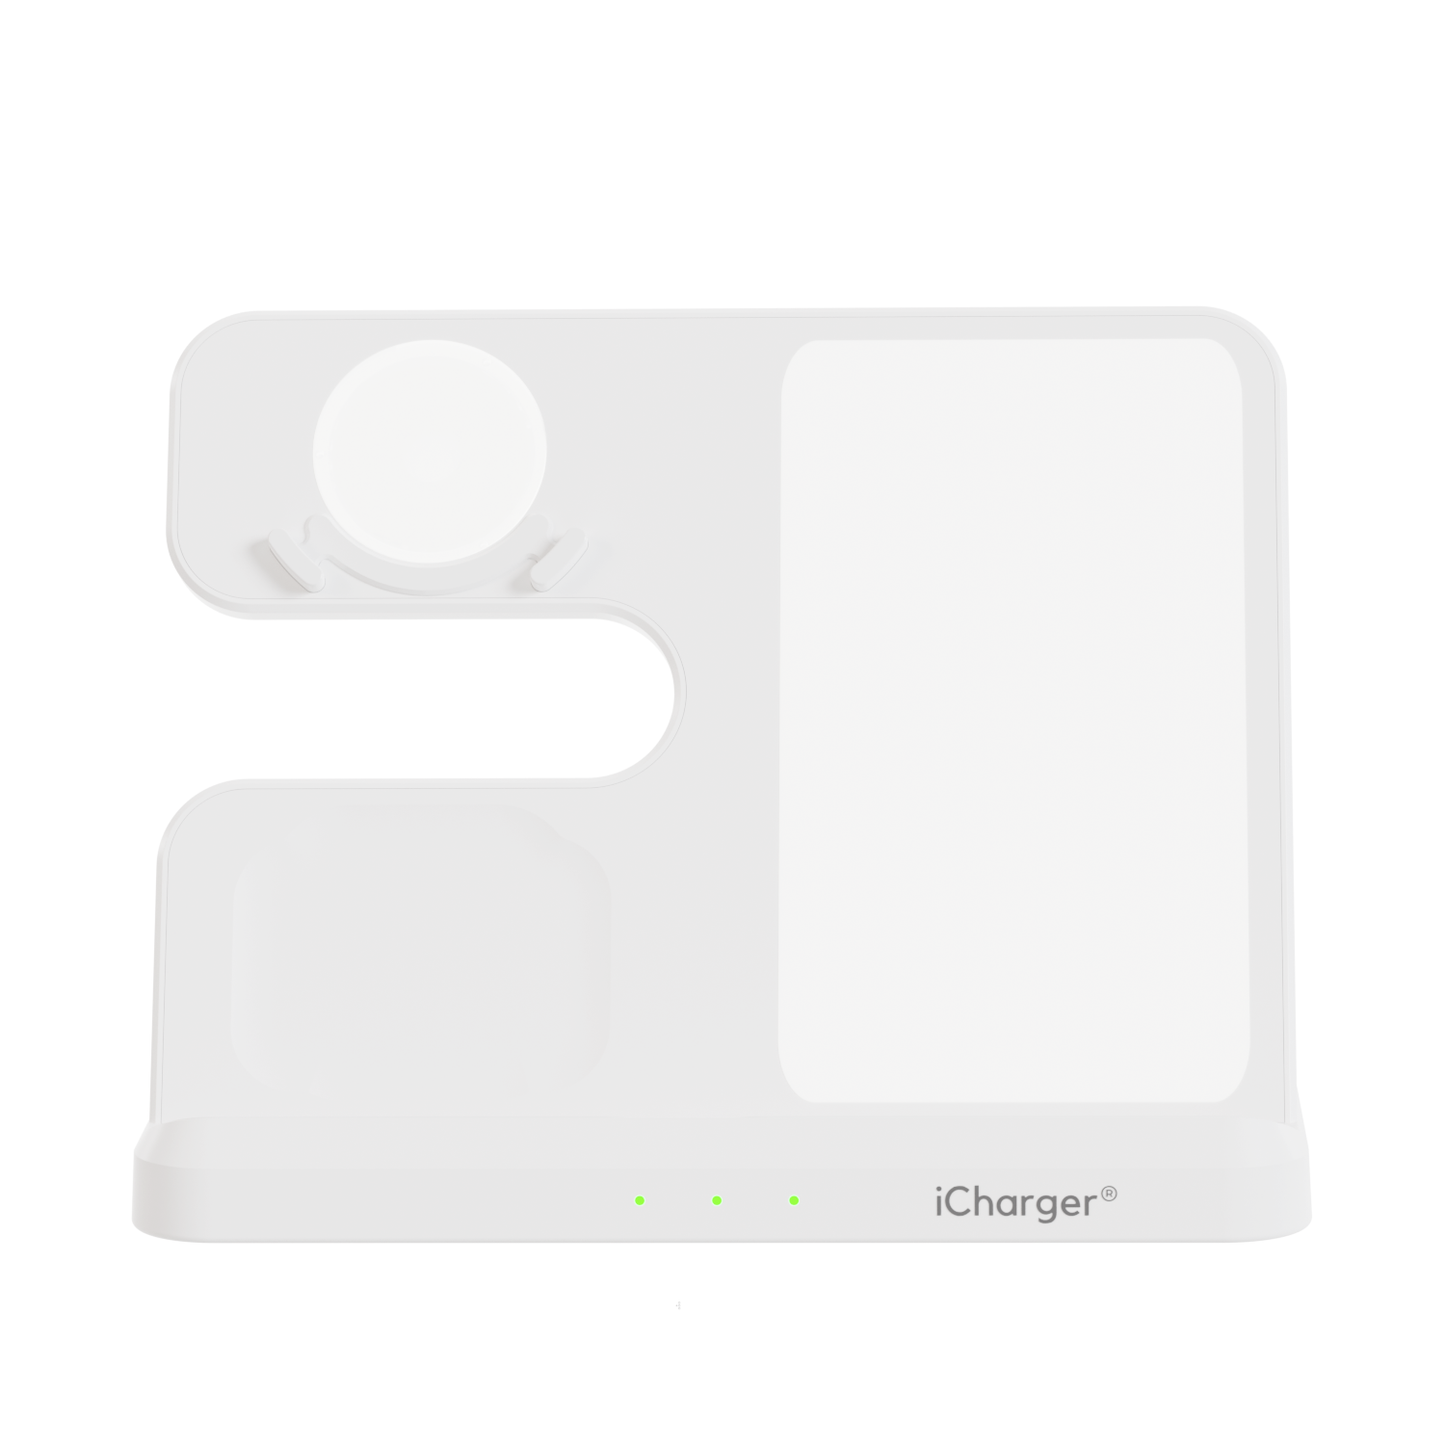 iCharger Samsungs editie in wit, 3-in-1 Qi draadloze oplaadstation met een tablet, smartwatch en oordopjes, inclusief een iCharger stekker.